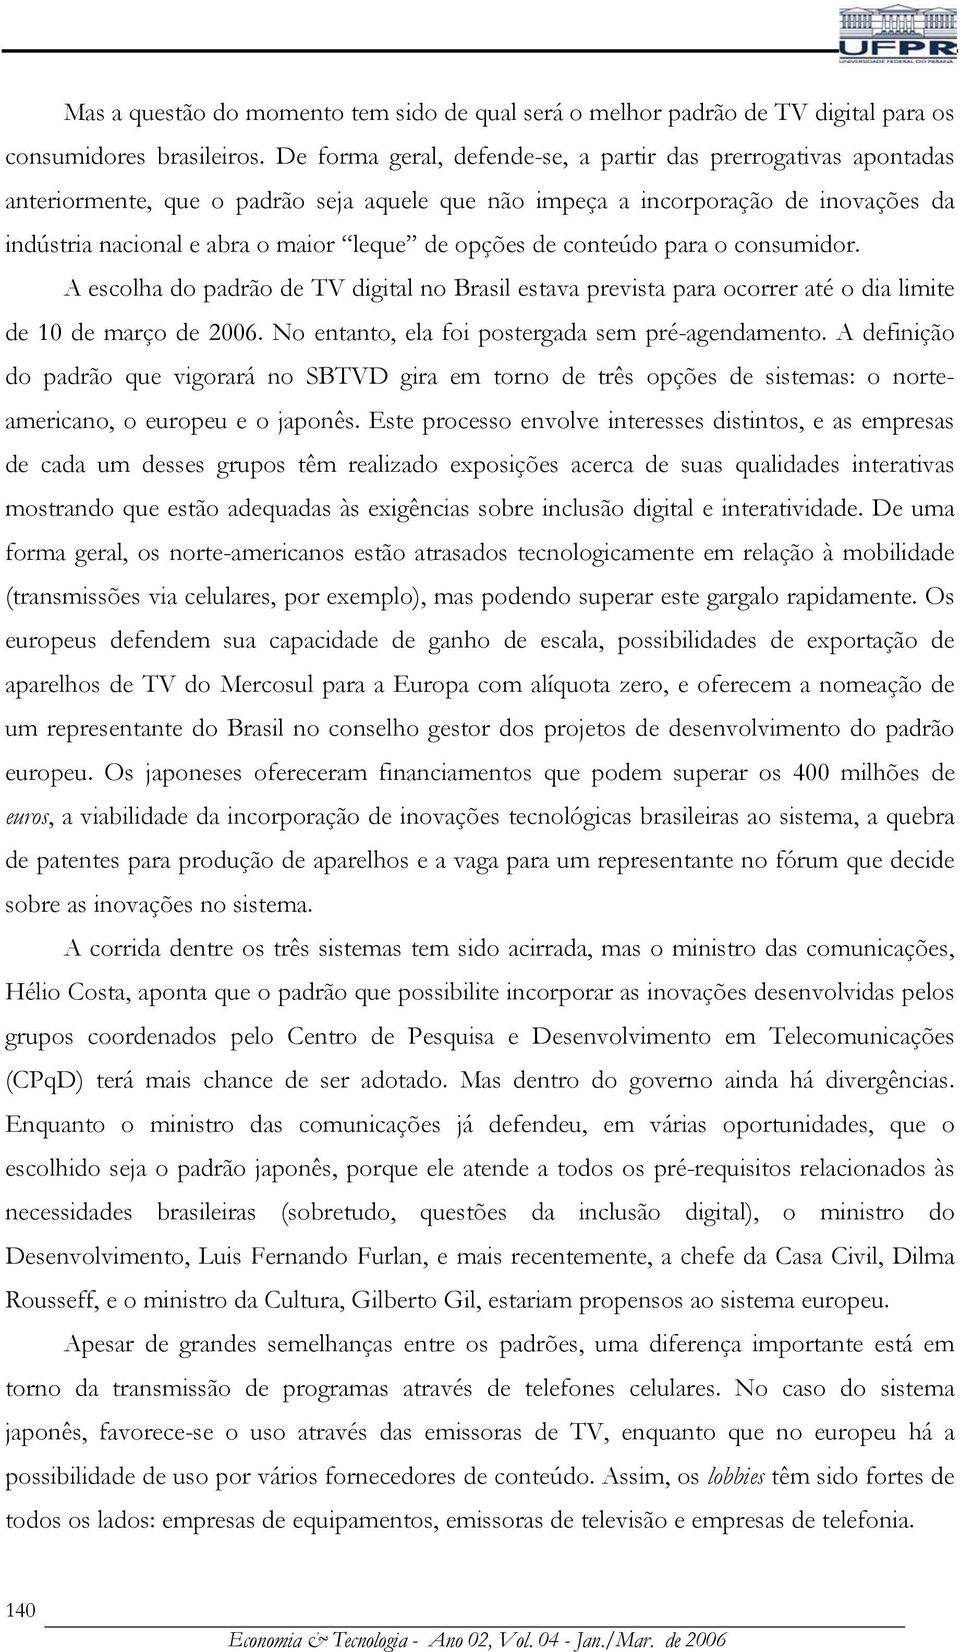 opções de conteúdo para o consumidor. A escolha do padrão de TV digital no Brasil estava prevista para ocorrer até o dia limite de 10 de março de 2006.